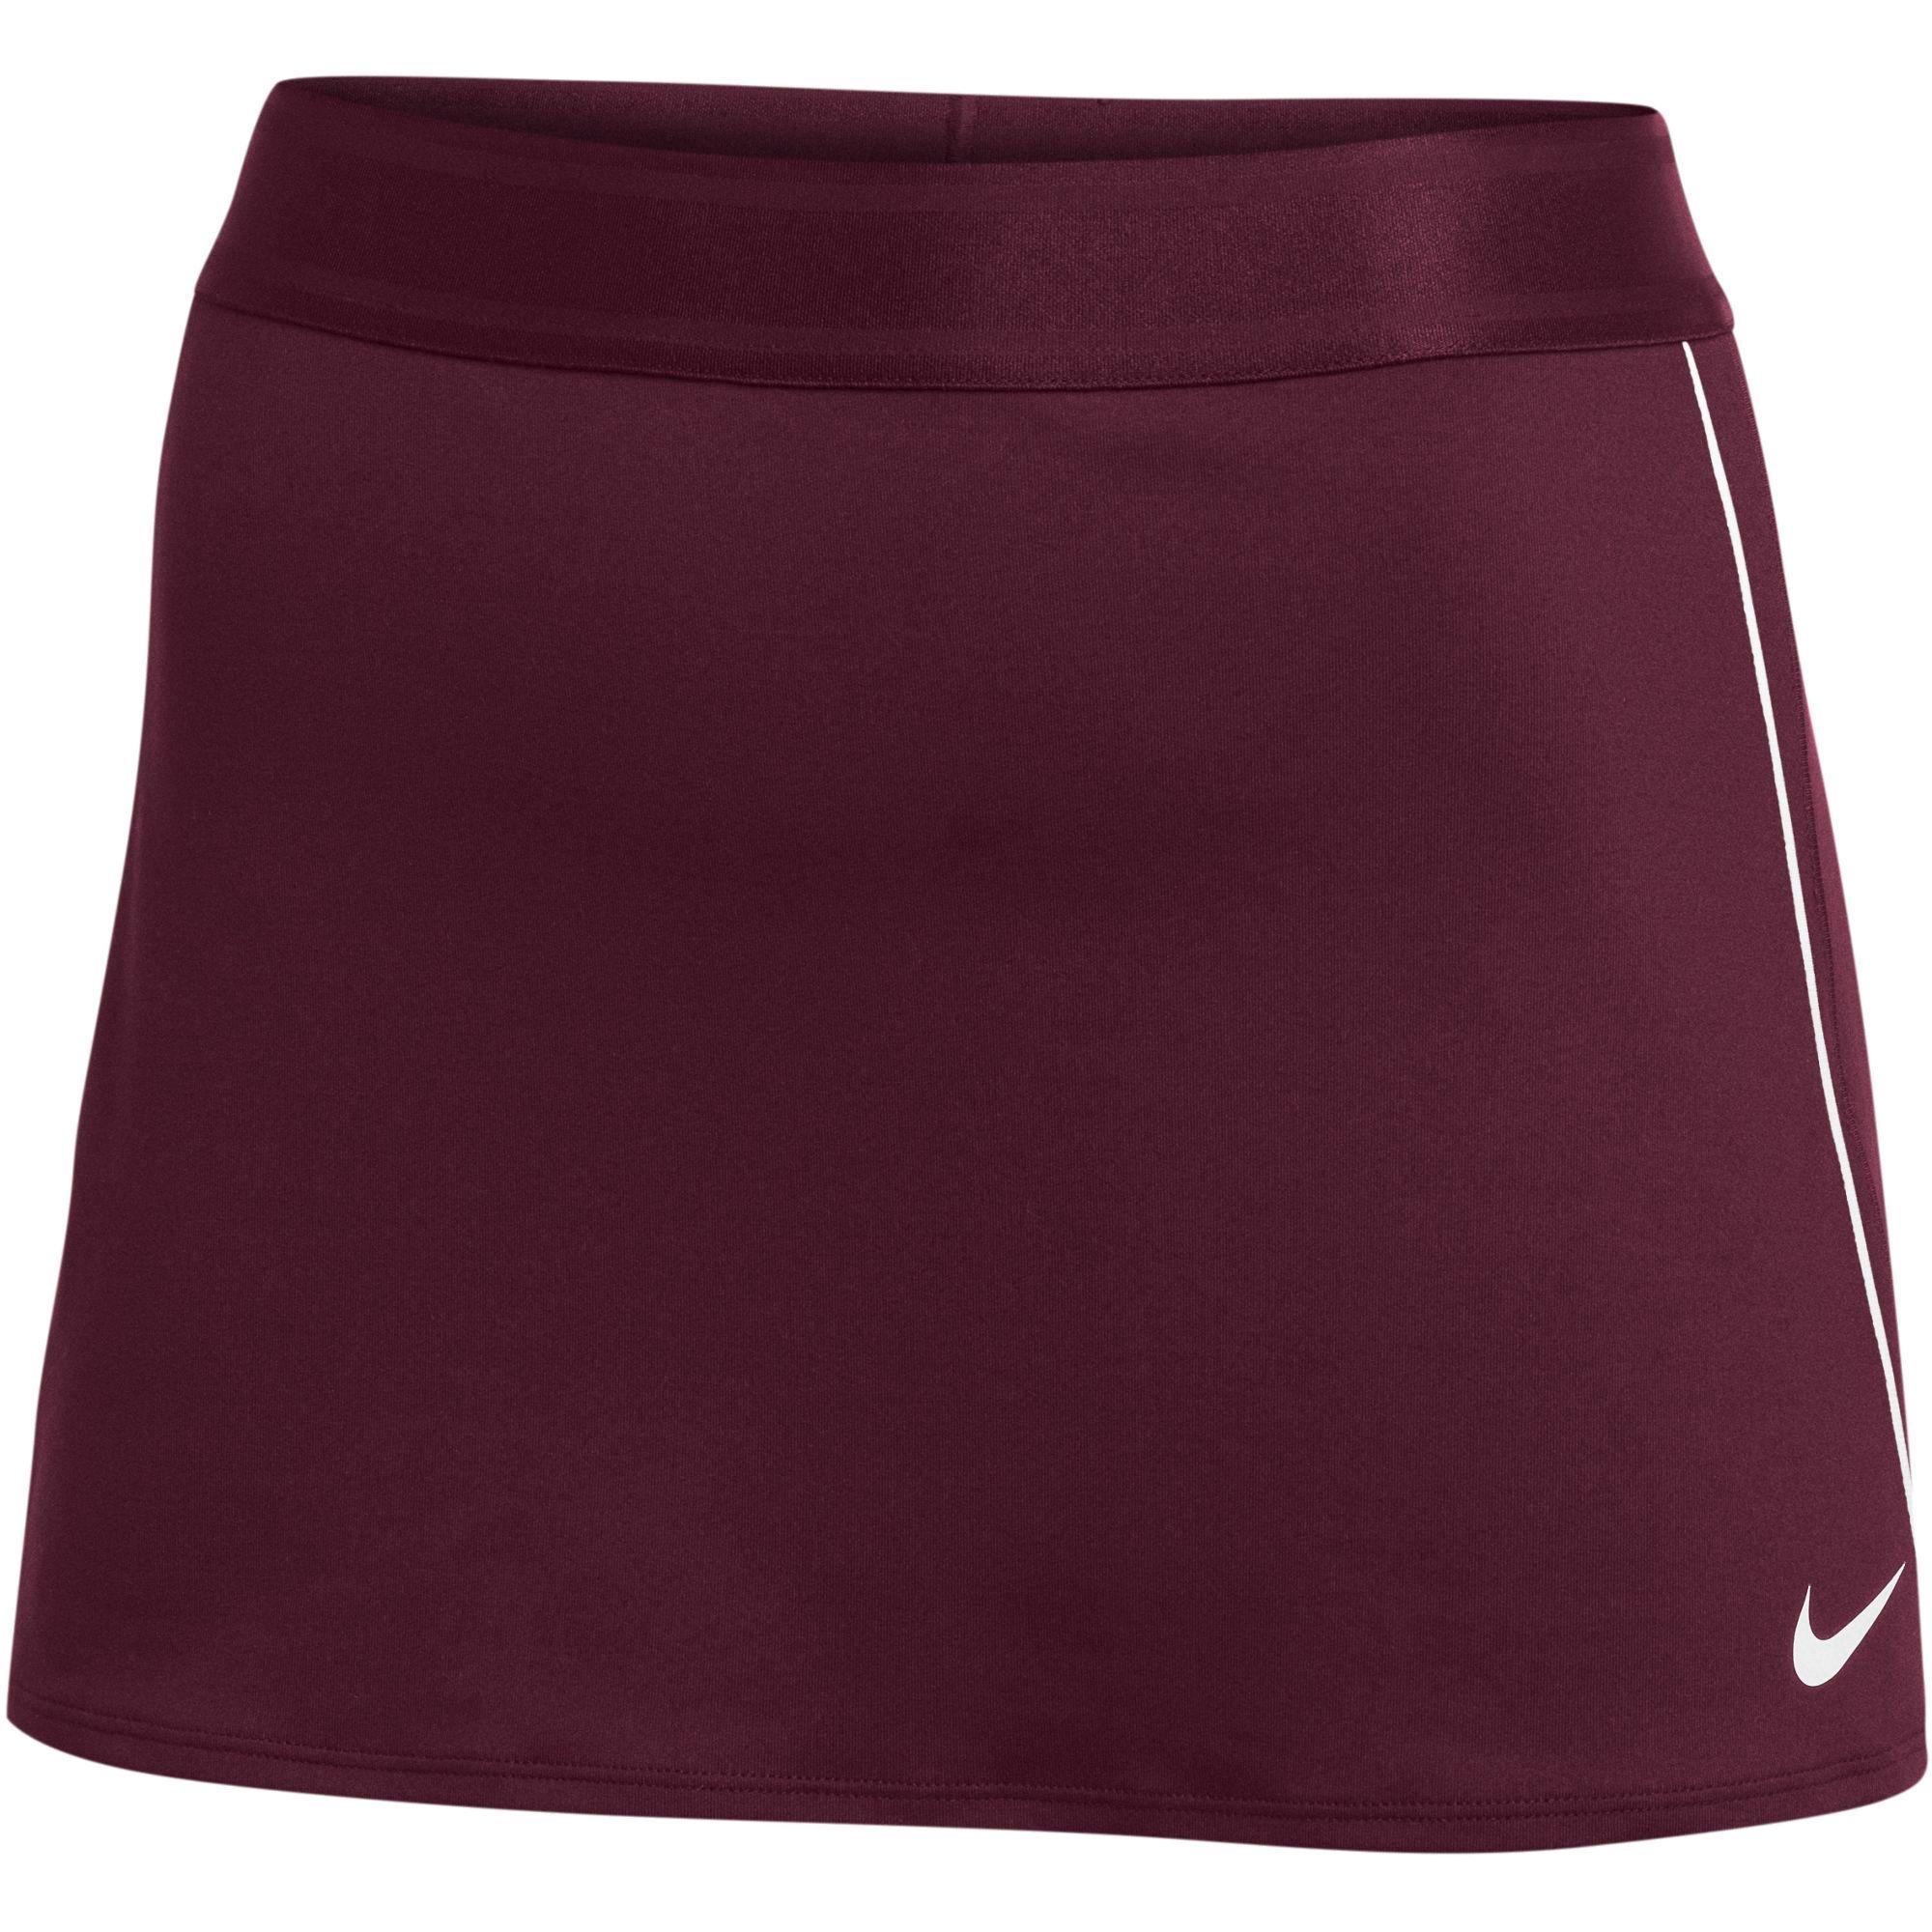 Nike Dri-fit Tennis Skirt in Purple - Lyst